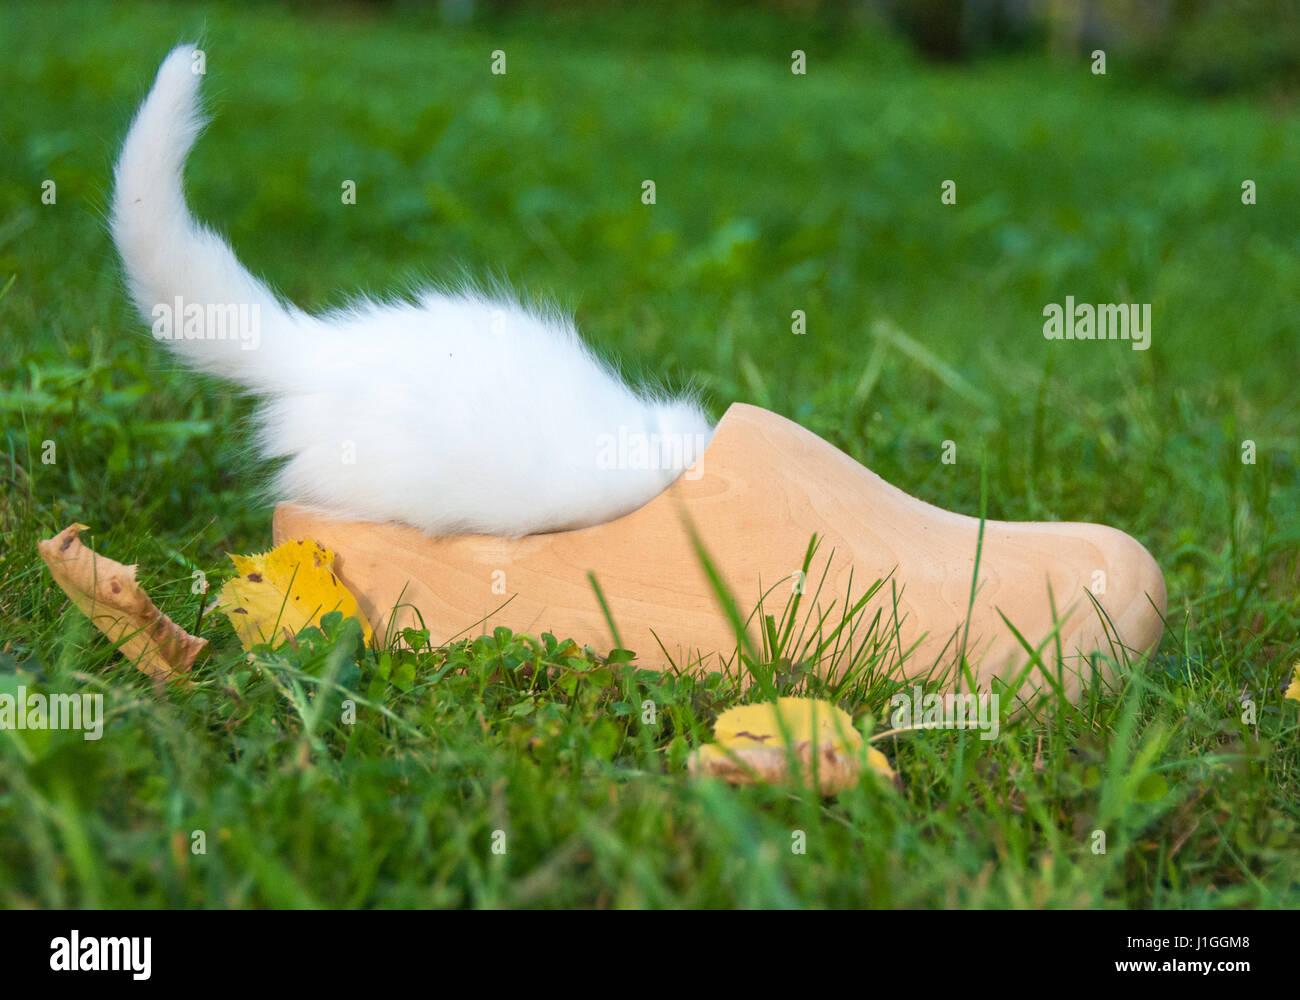 Petit chat blanc dans un caisson en bois Banque D'Images